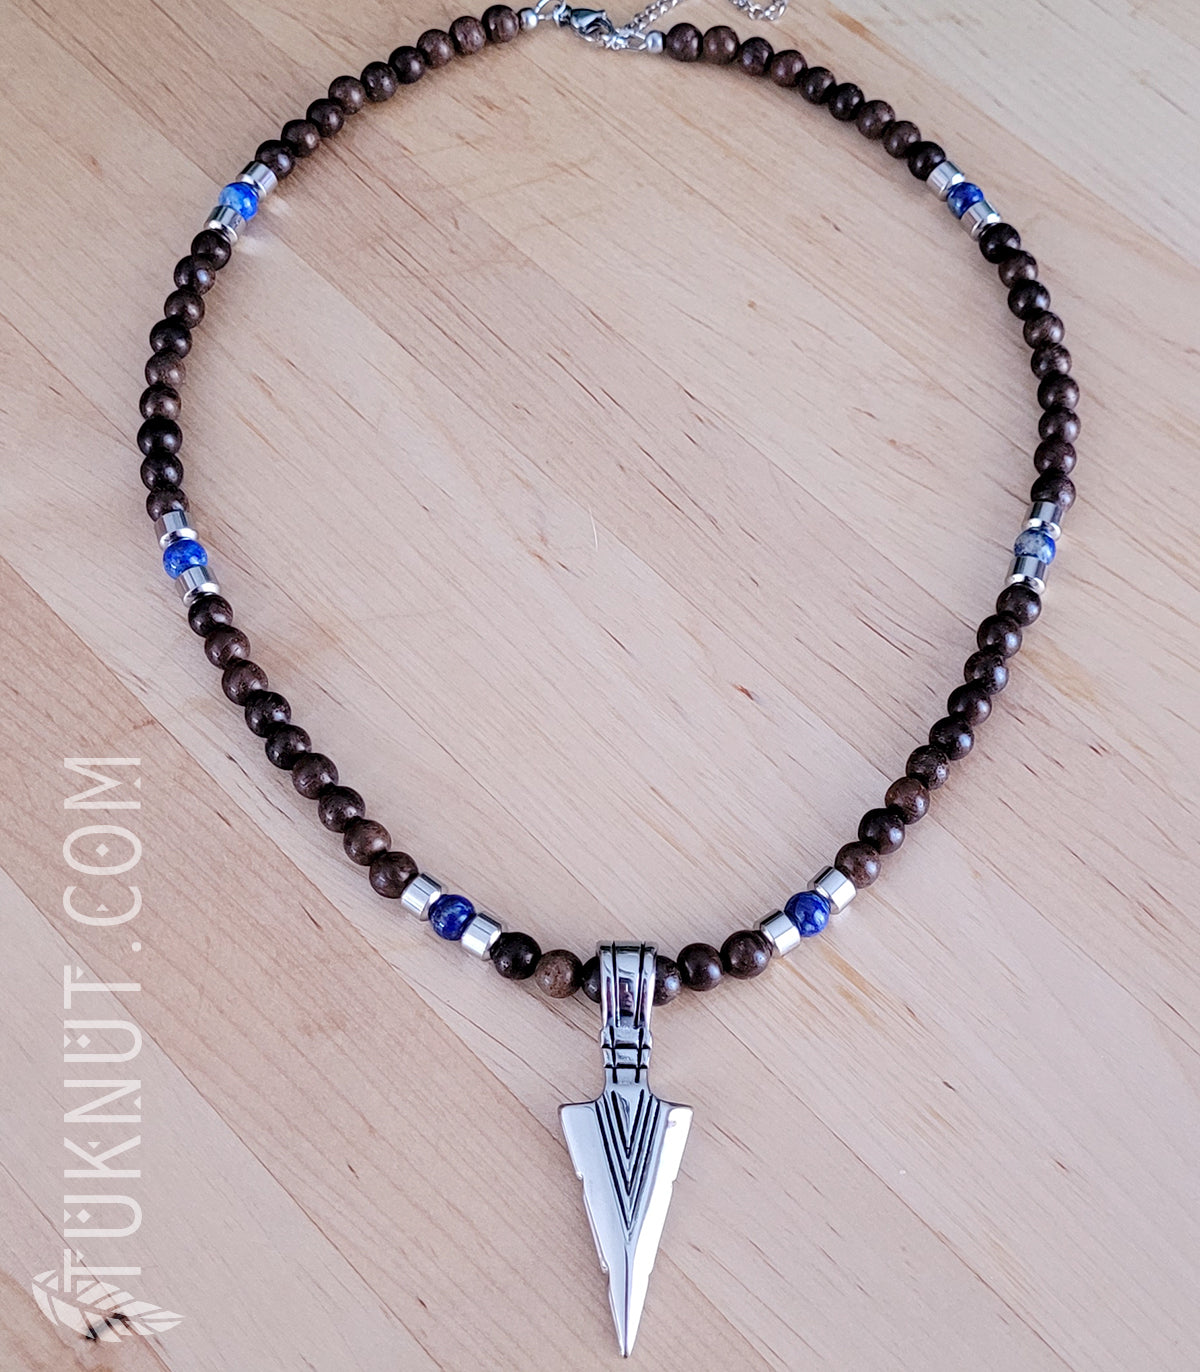 Collier d'inspiration autochtone avec pendentif (pointe de flèche) en acier inoxydable avec bois et lapis lazuli (couleurs : brun, bleu foncé et argent) TUKNUT